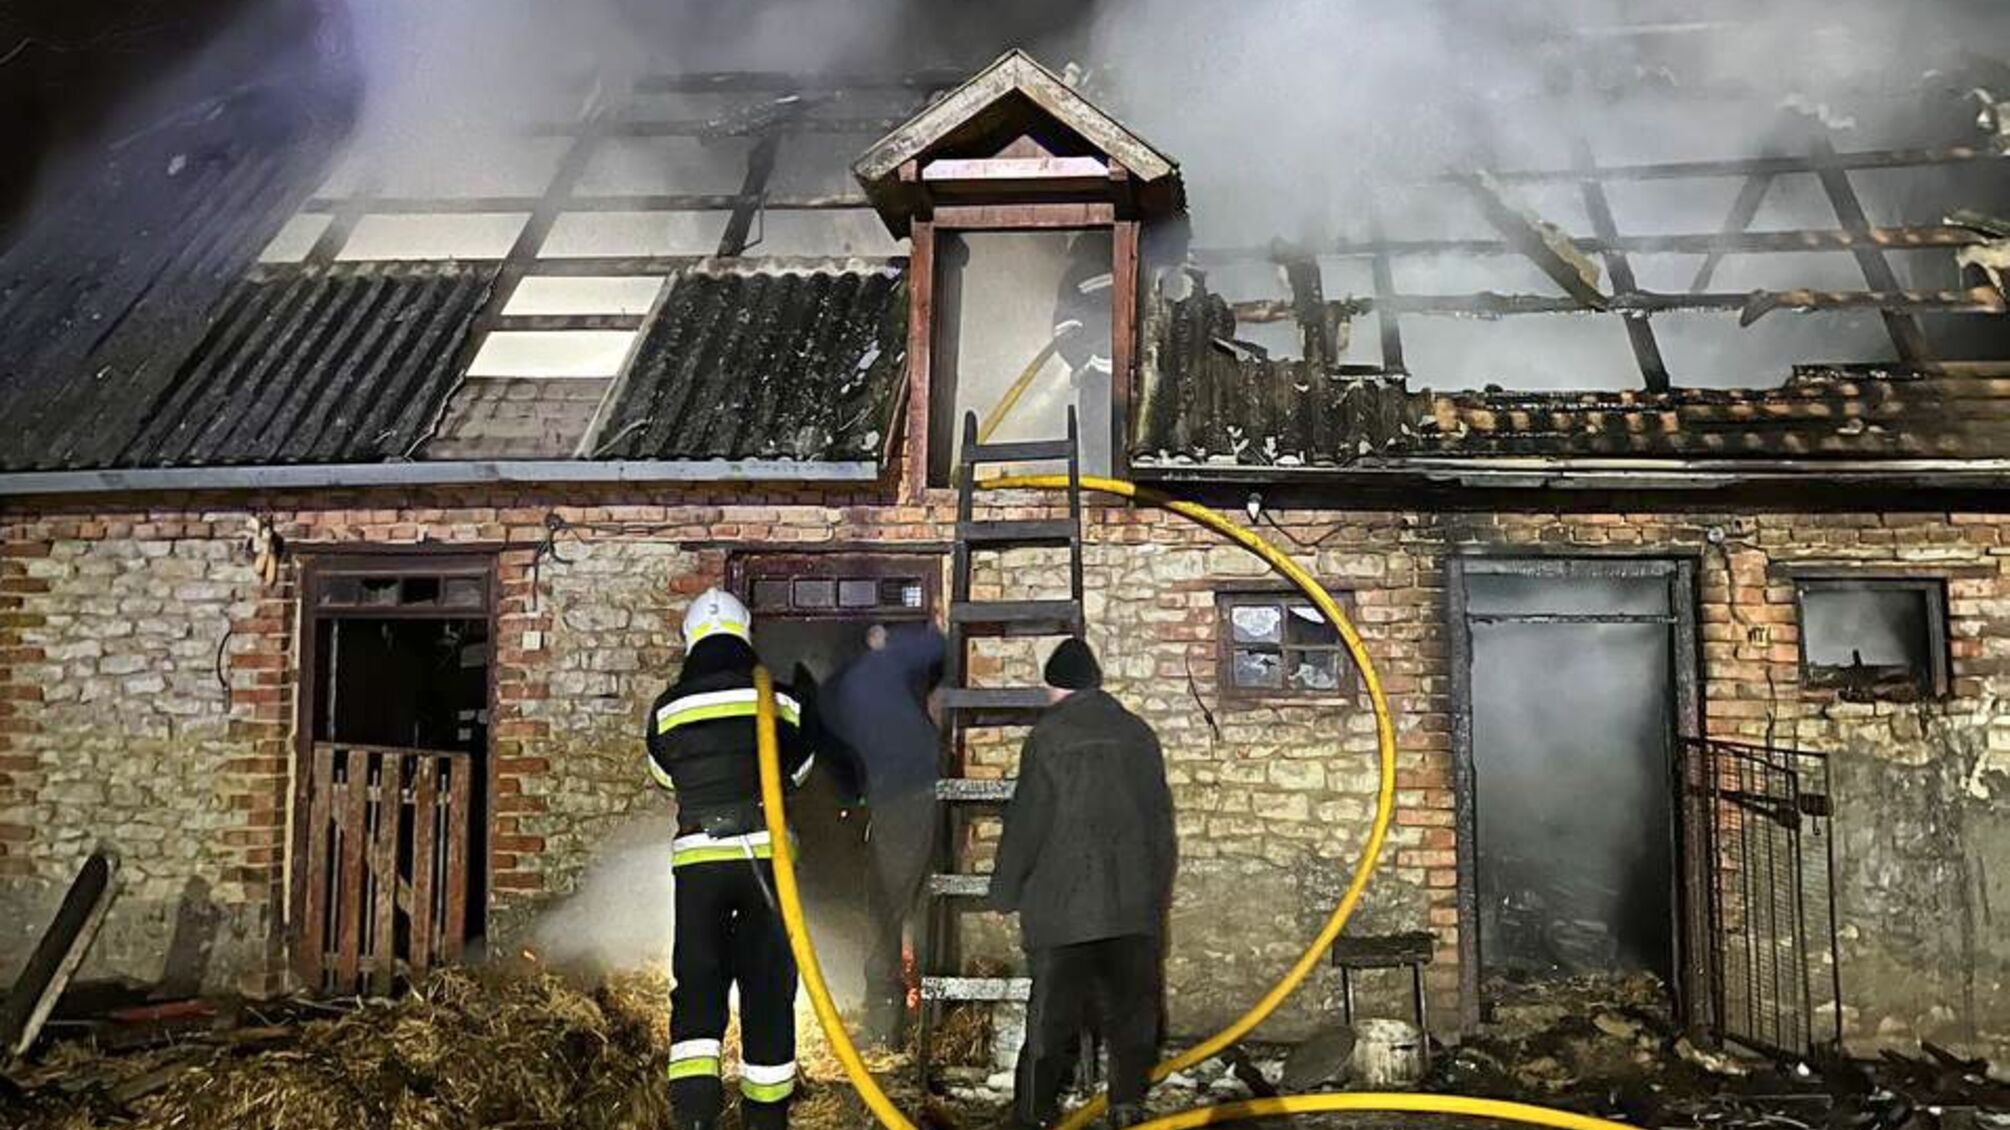 Сгорели 500 кг корма и крыша: в Тернопольском районе загорелось здание (фото)